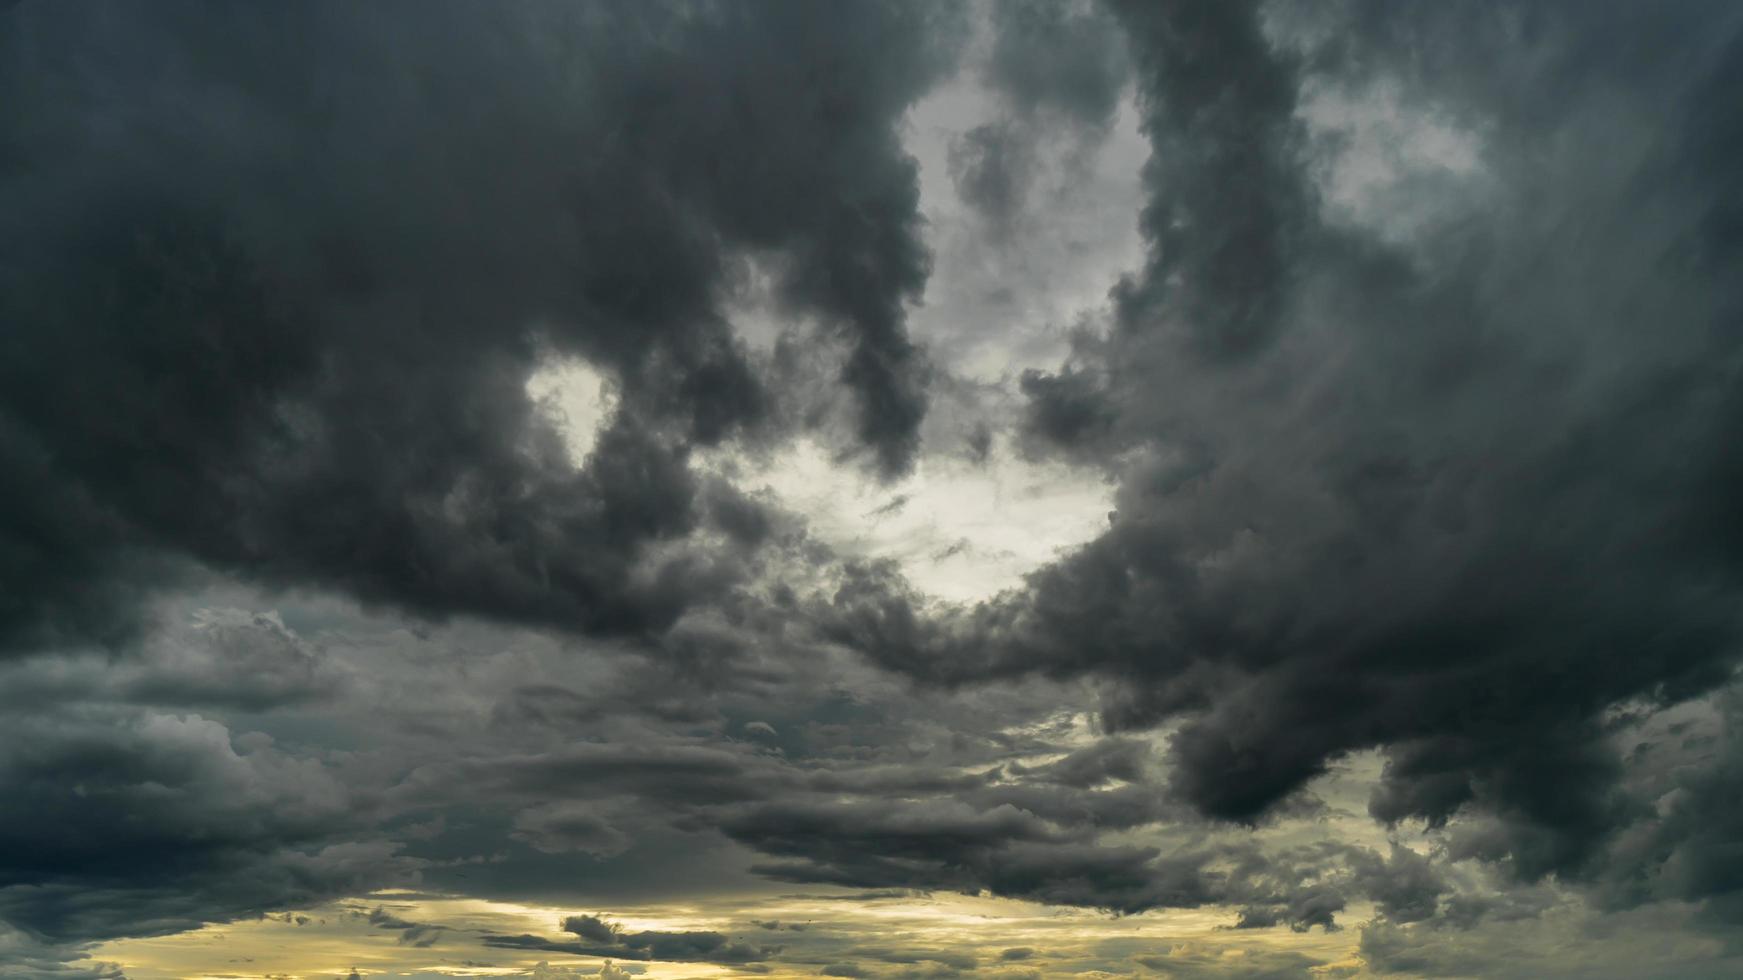 nuages d'orage dramatiques au ciel sombre photo